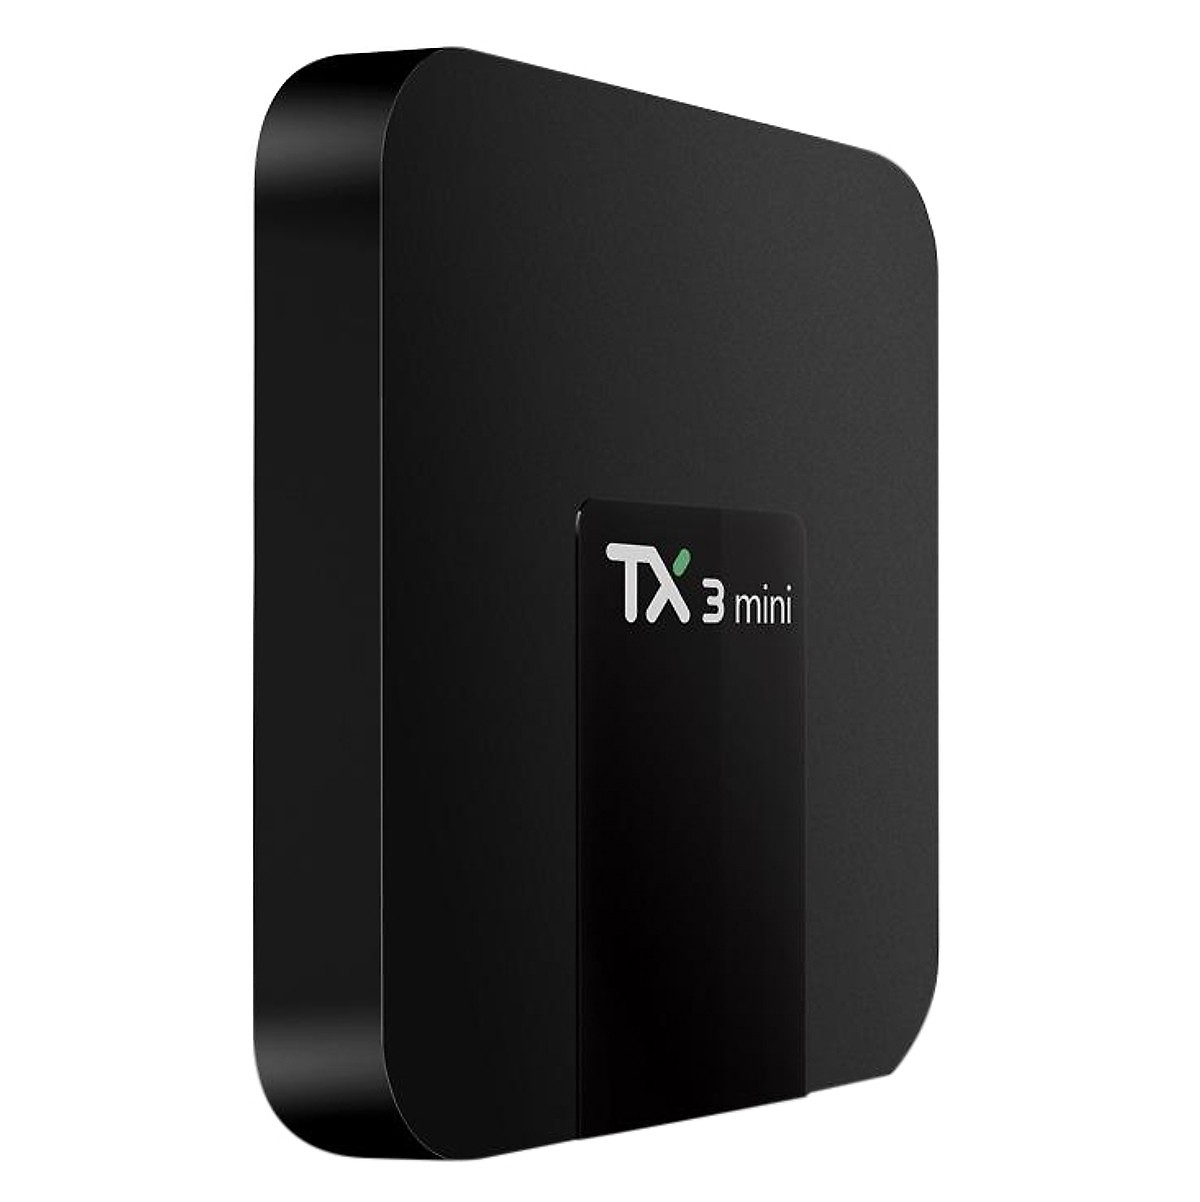 Tivibox TX3 mini Kiwivision 2G/16G/S905W androi 7.1 - Hàng mới chính hãng